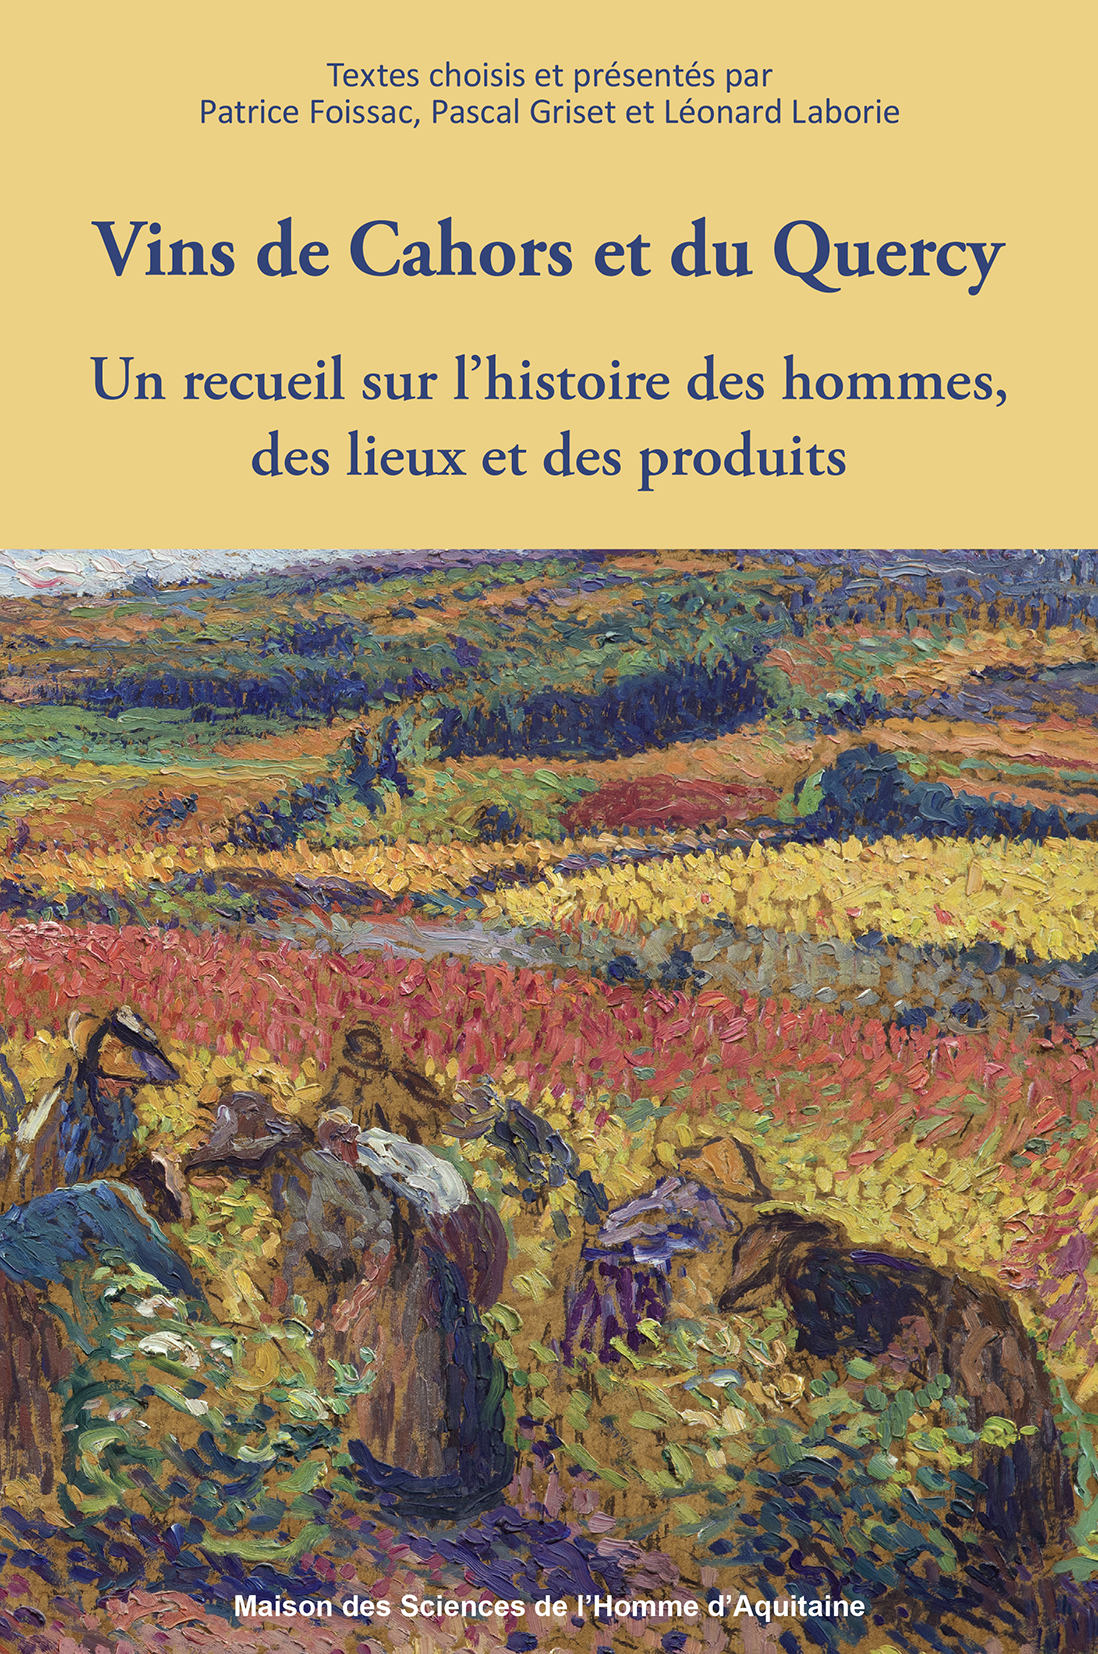 Vins de Cahors et du Quercy. Un recueil sur l’histoire des hommes, des lieux et des produits.